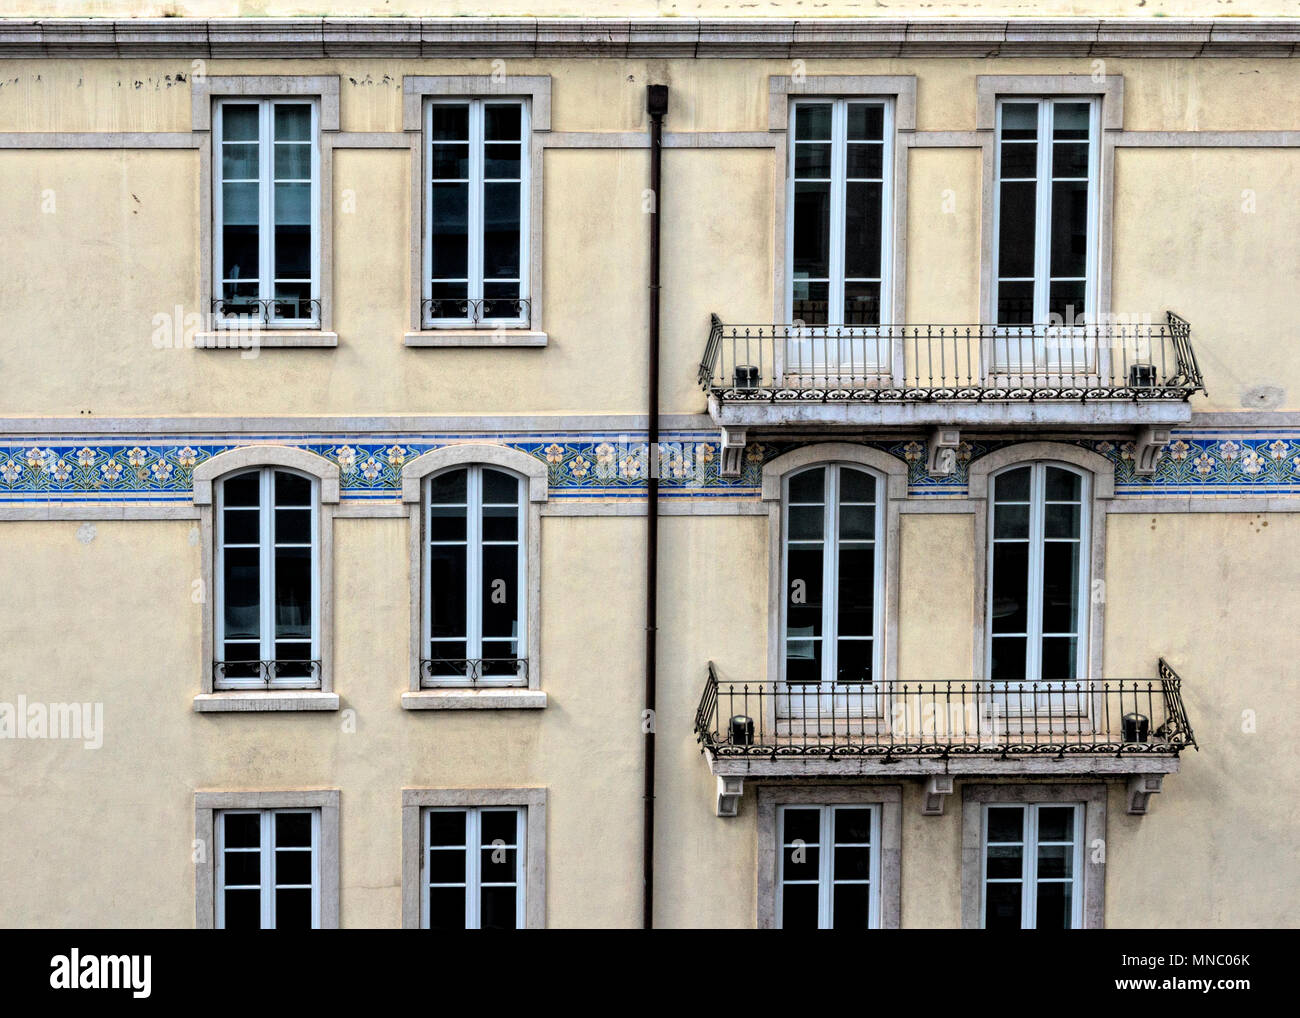 Abschnitt einer Office Block mit abwechslungsreichen Fenster, Balkone und dekorative Fliesen Stockfoto